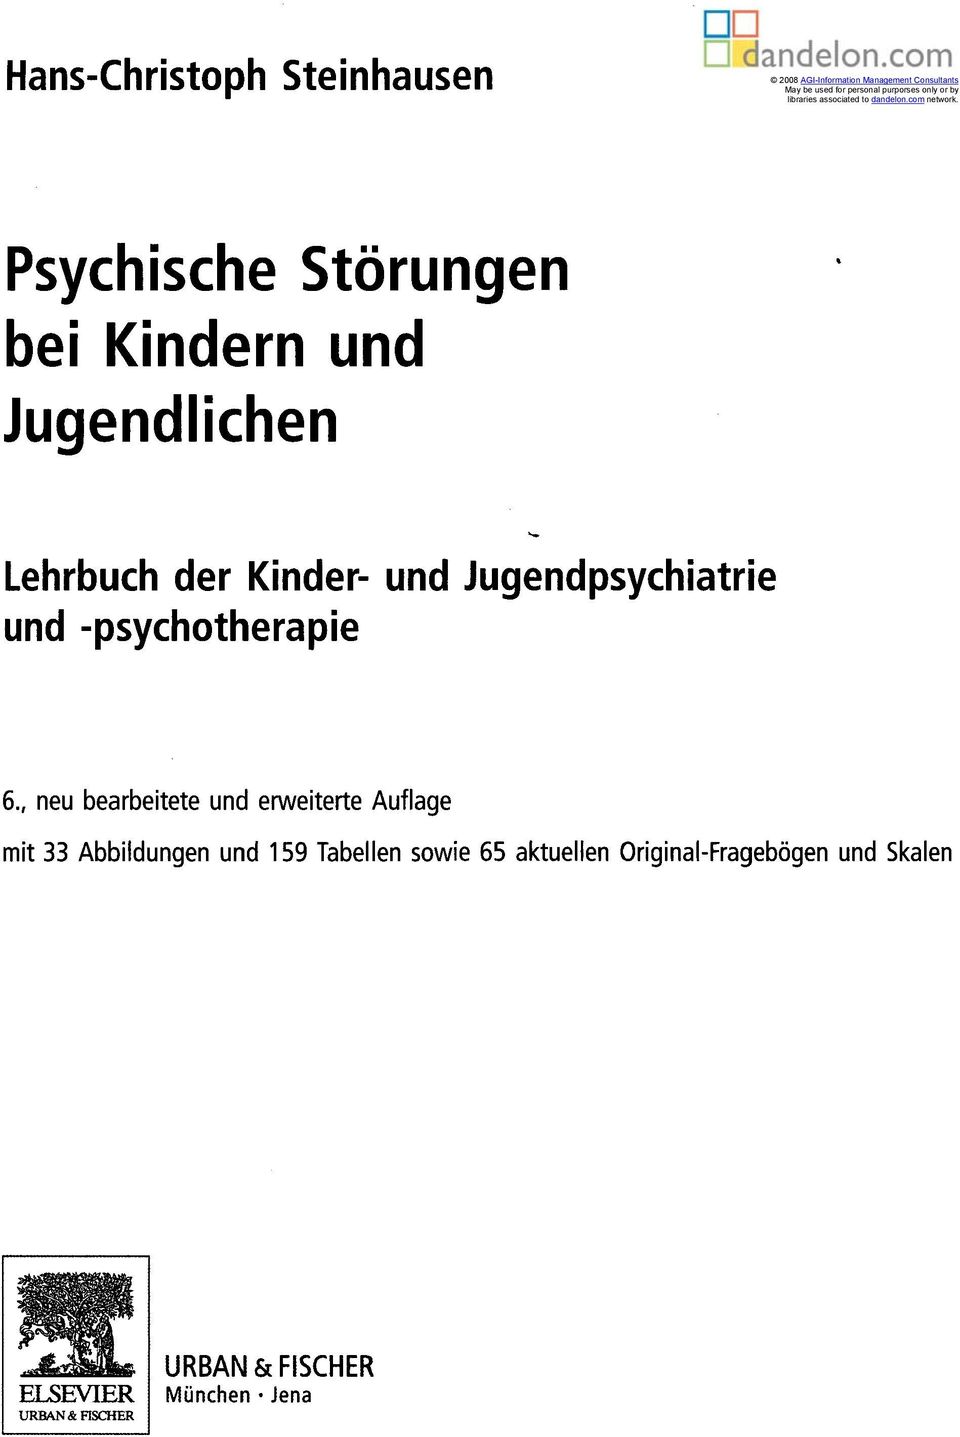 Psychische Störungen bei Kindern und Jugendlichen Lehrbuch der Kinder- und Jugendpsychiatrie und